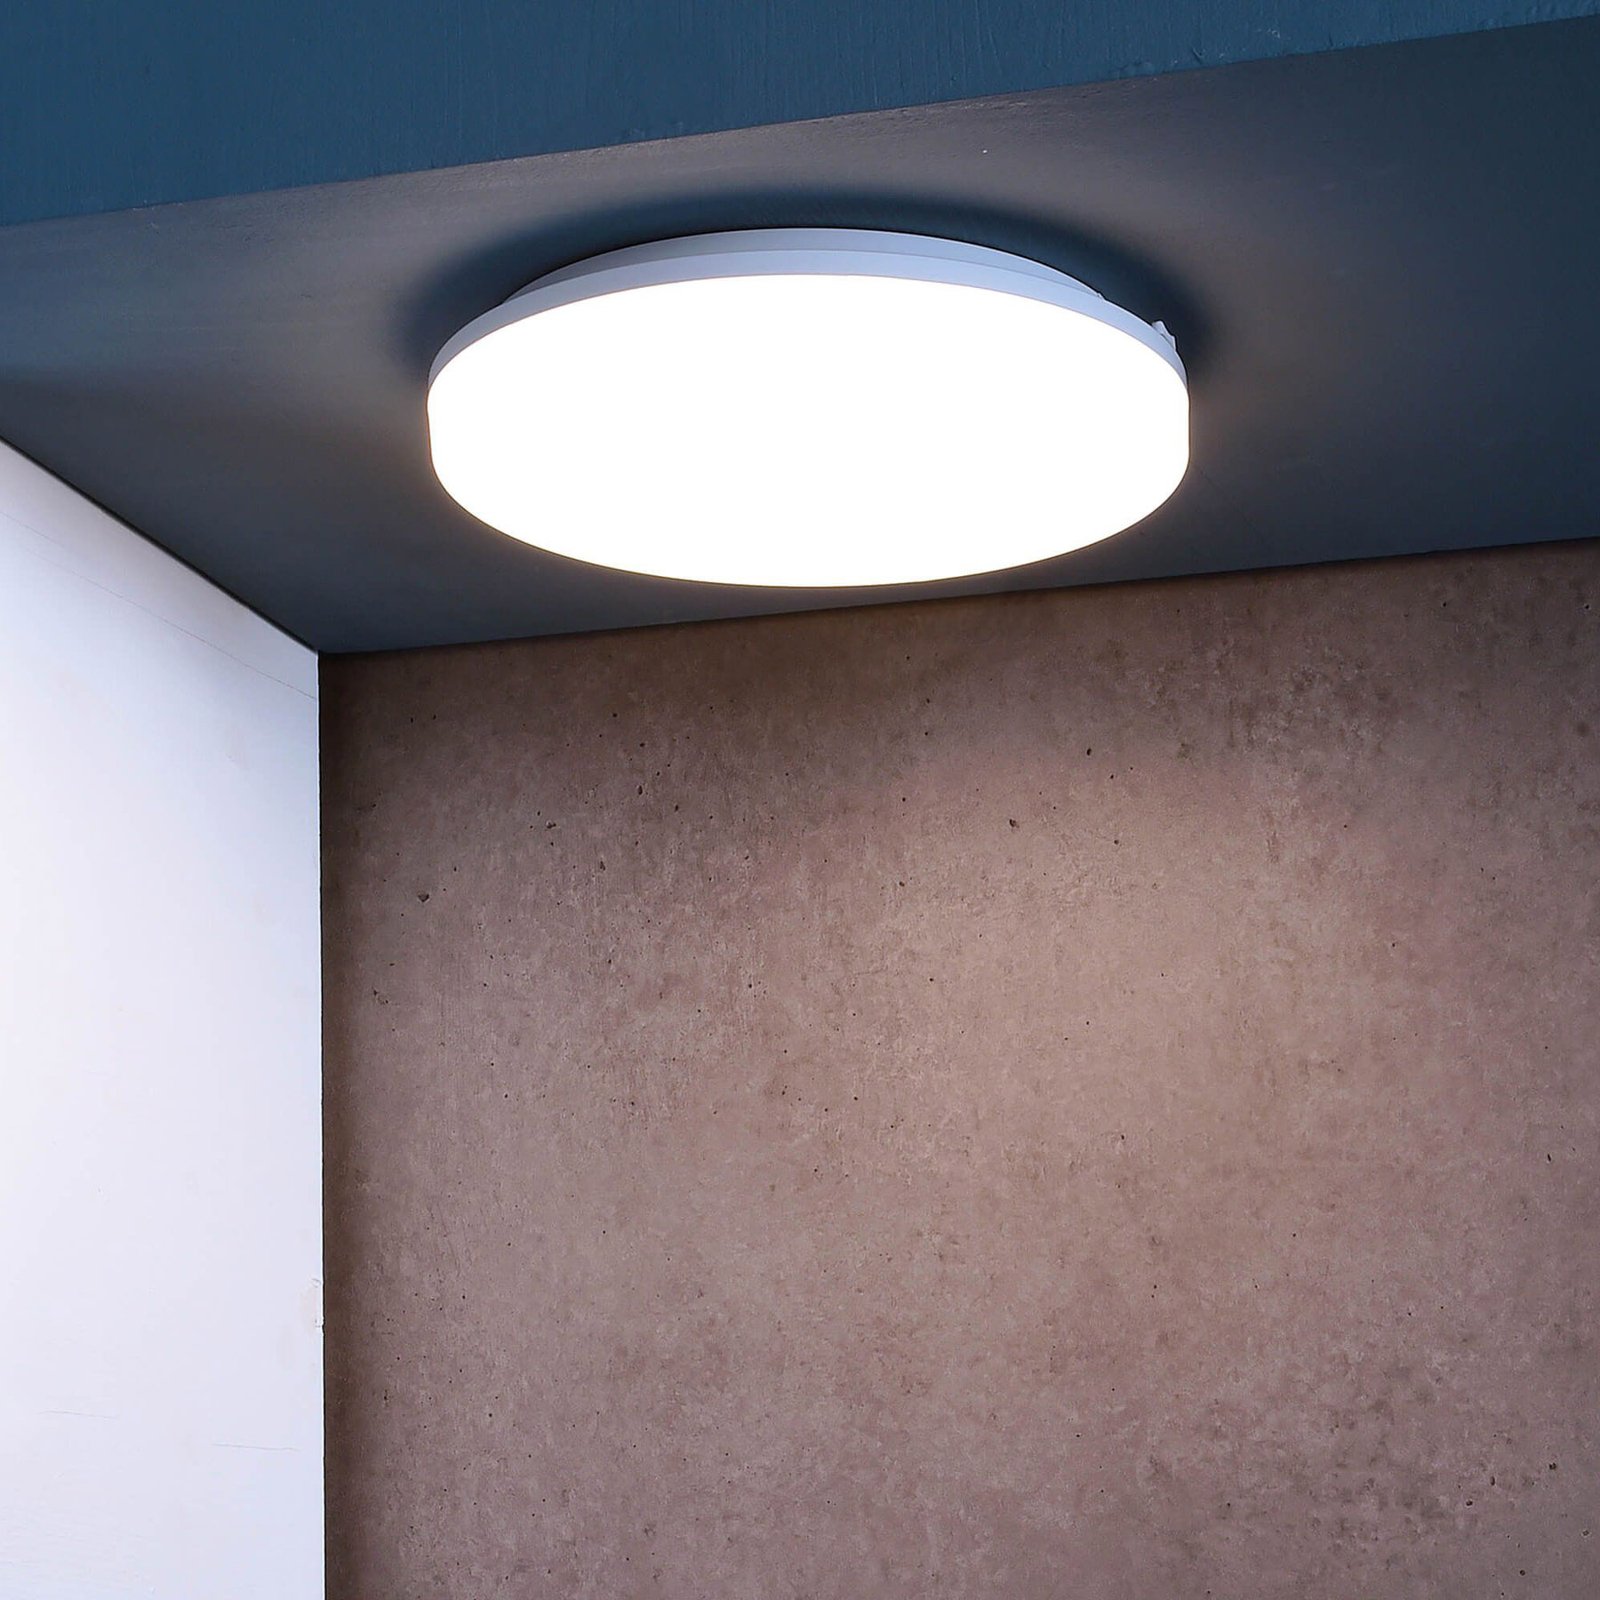 LED plafondlamp Altais, IP54, Ø 33 cm